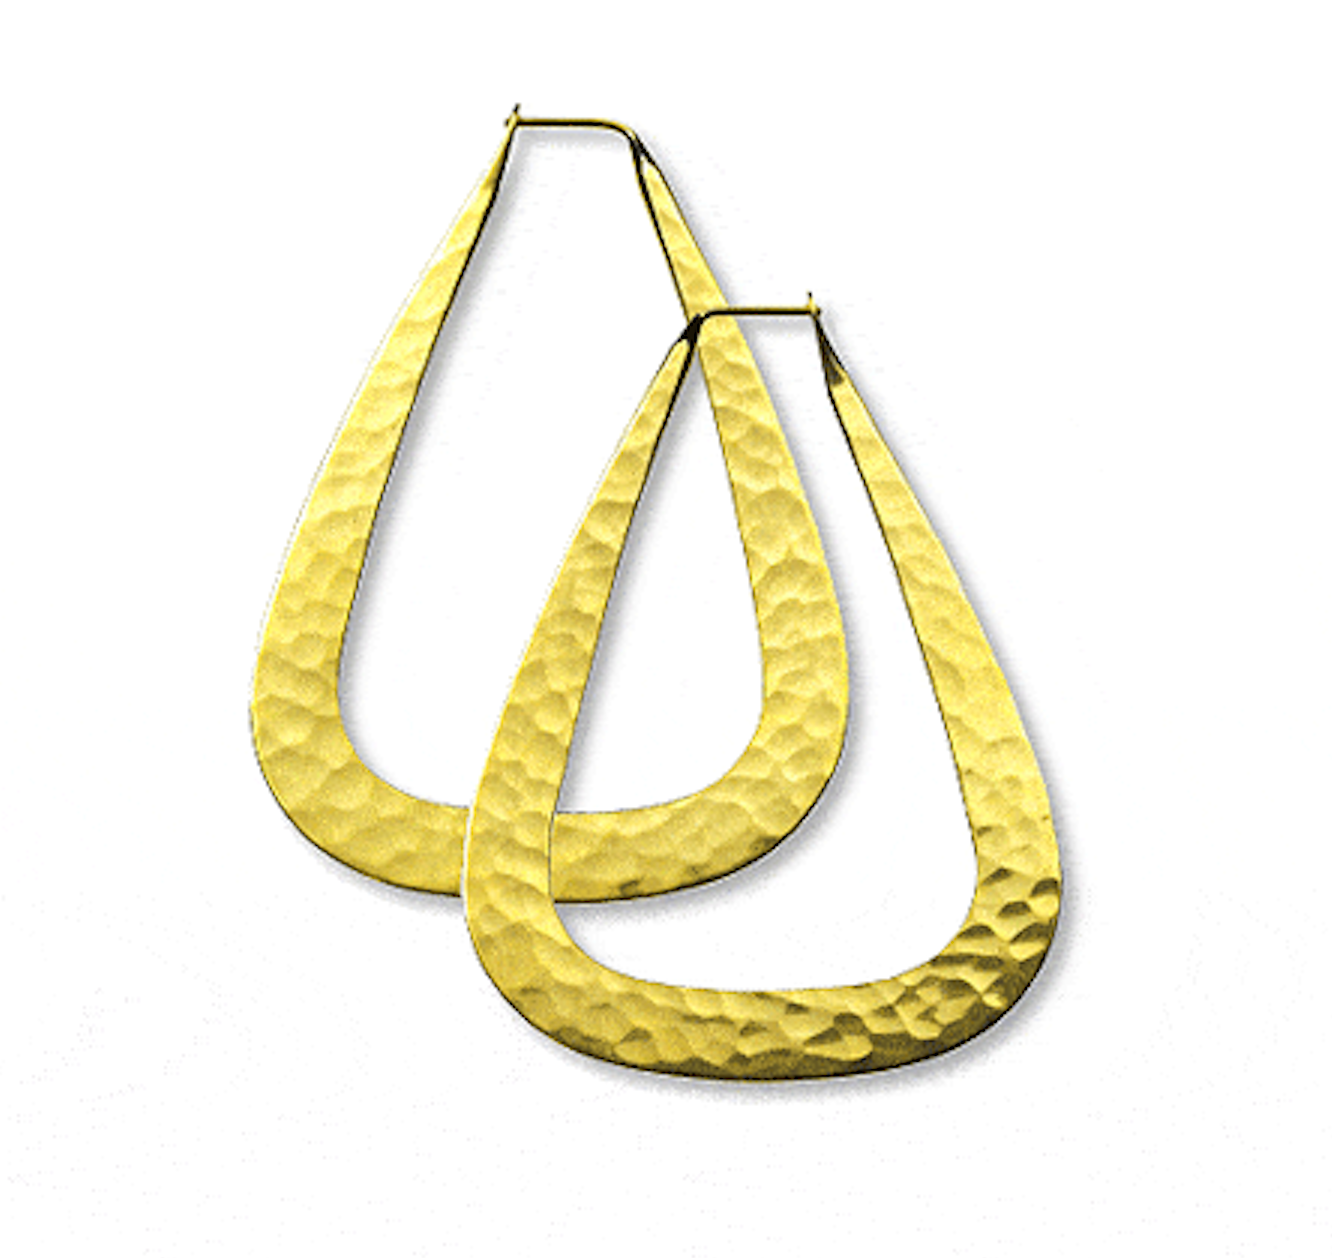 25mm 18K Gold Prism Earrings-Jewelry-Toby Pomeroy-Sorrel Sky Gallery